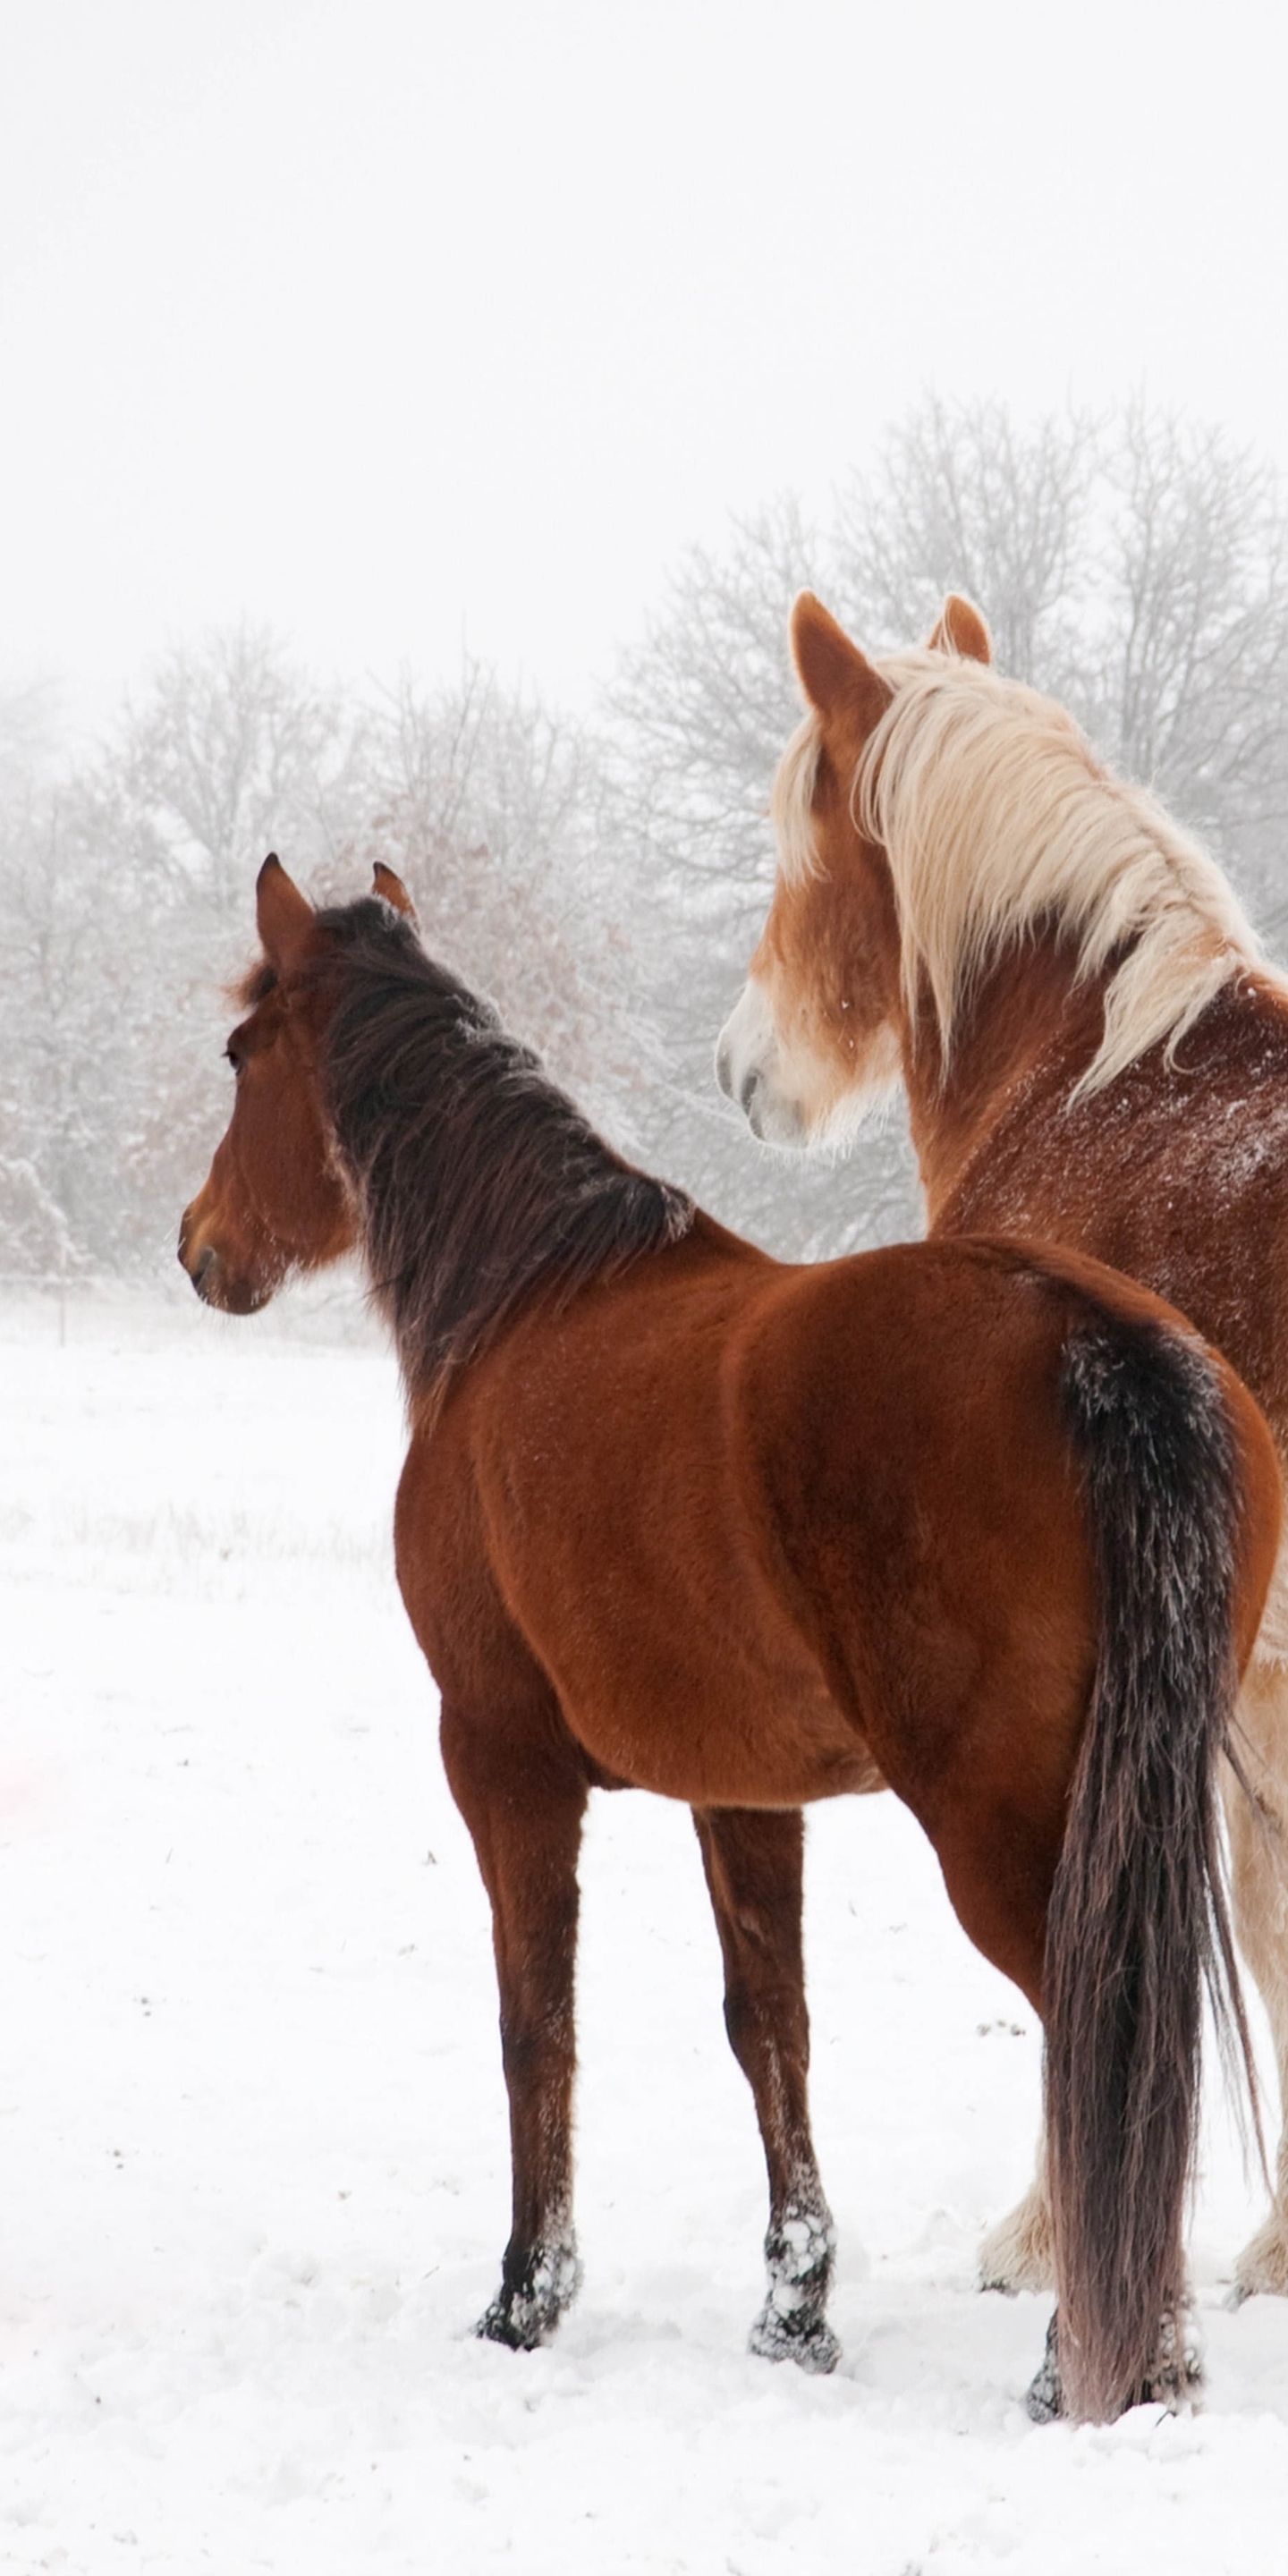 Картинка: Лошадь, зима, снег, пара